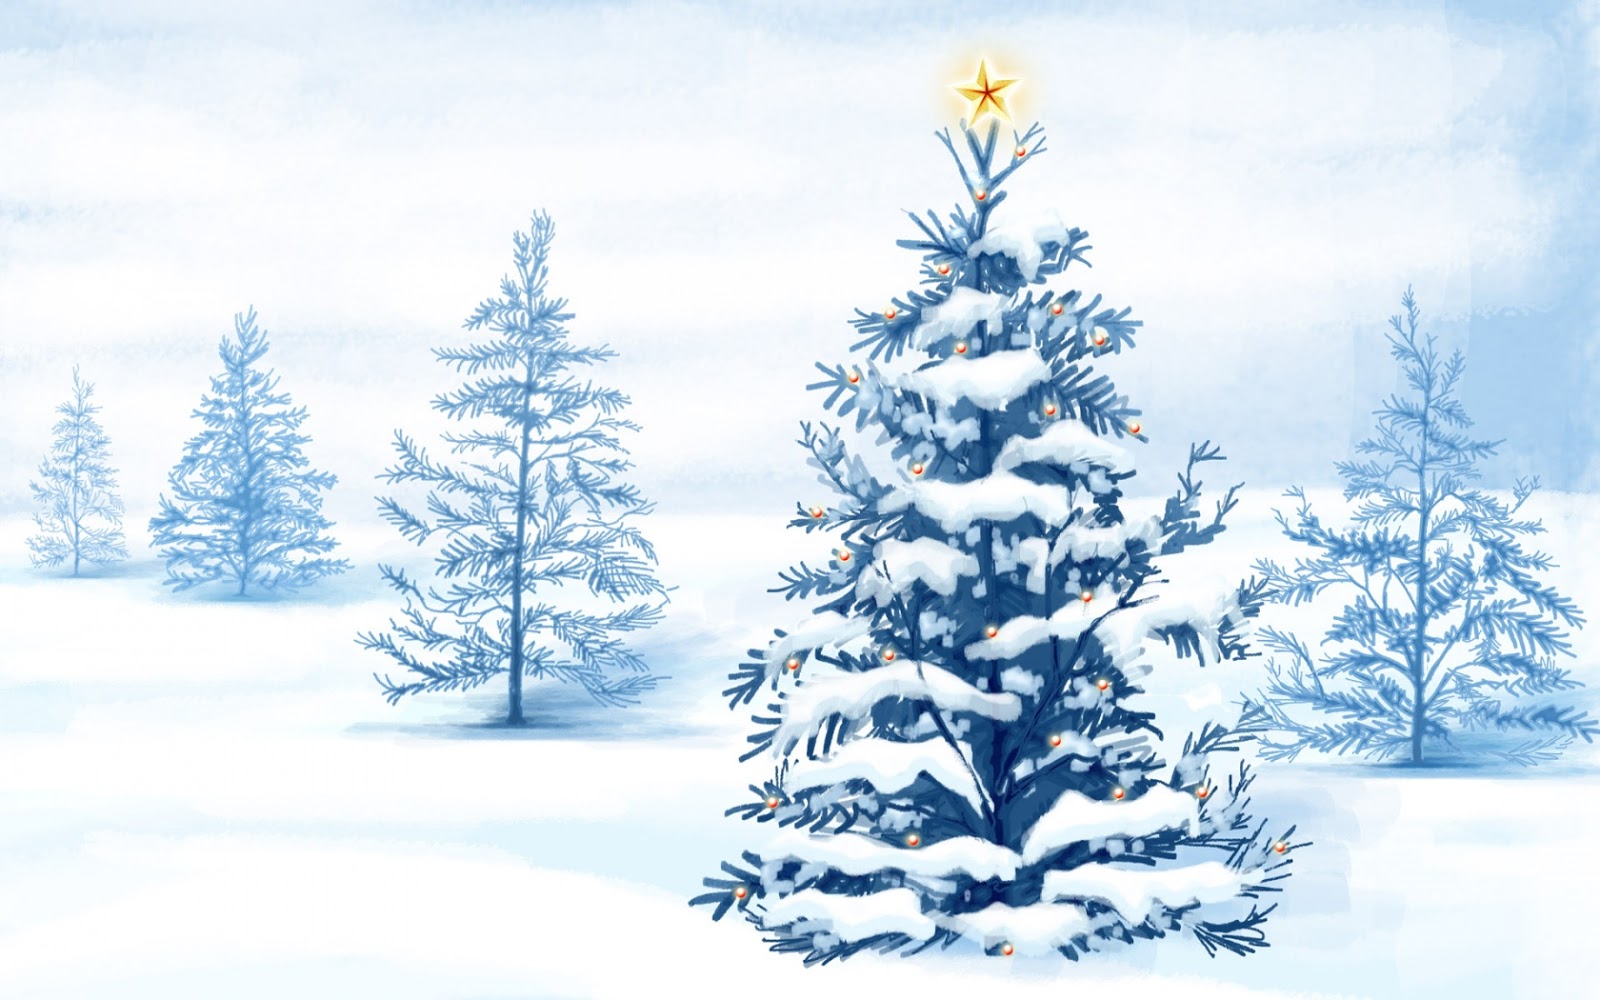 http://2.bp.blogspot.com/-cA7Q6CwVbhs/UN3GhtAjM5I/AAAAAAAAhJU/MPLBjmkNjdA/s1600/christmas_snow_trees-1680x1050.jpg